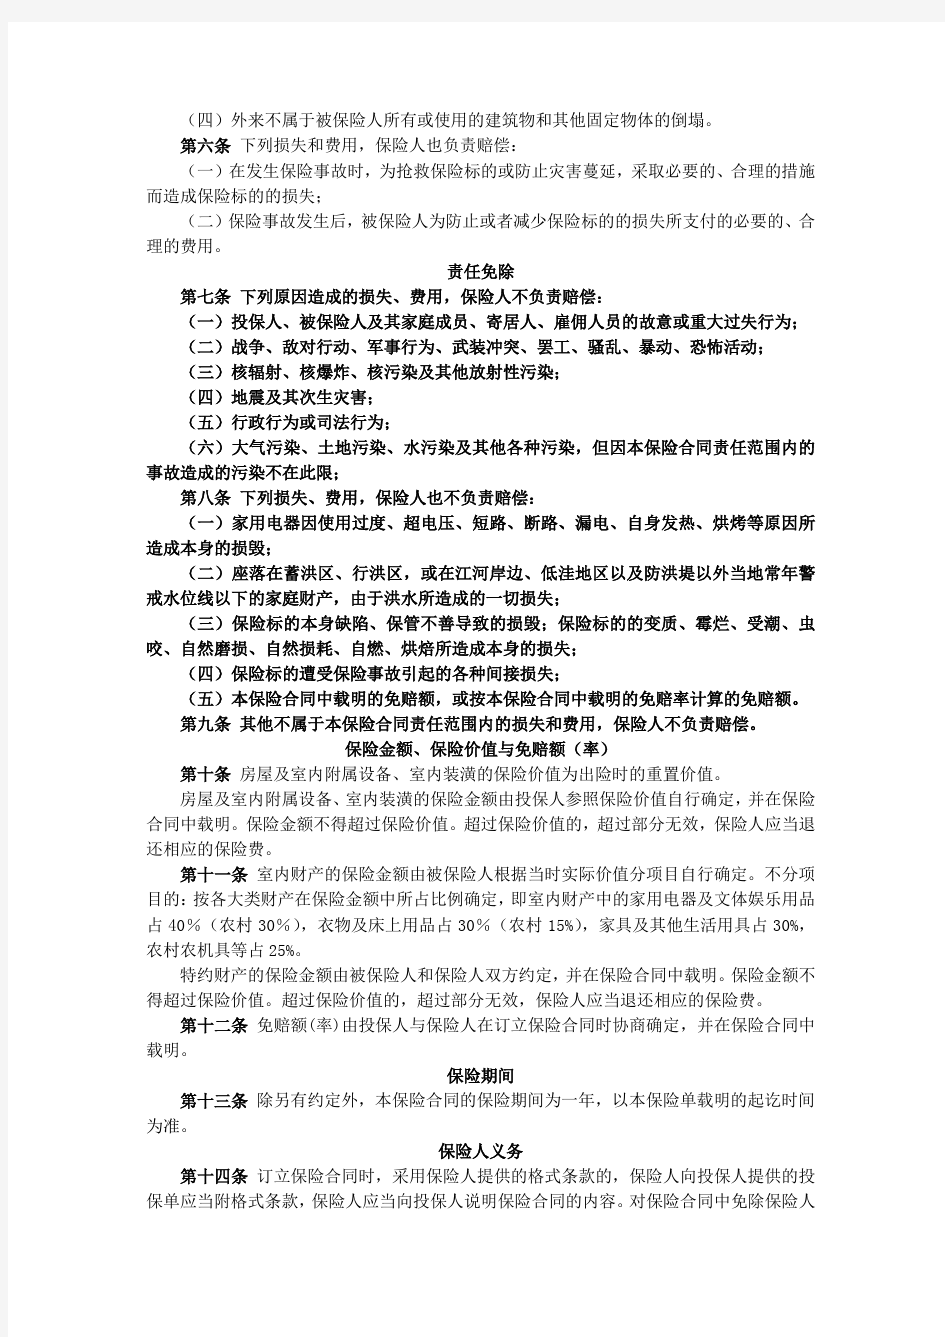 中国人寿财产保险股份有限公司家庭财产保险条款.pdf